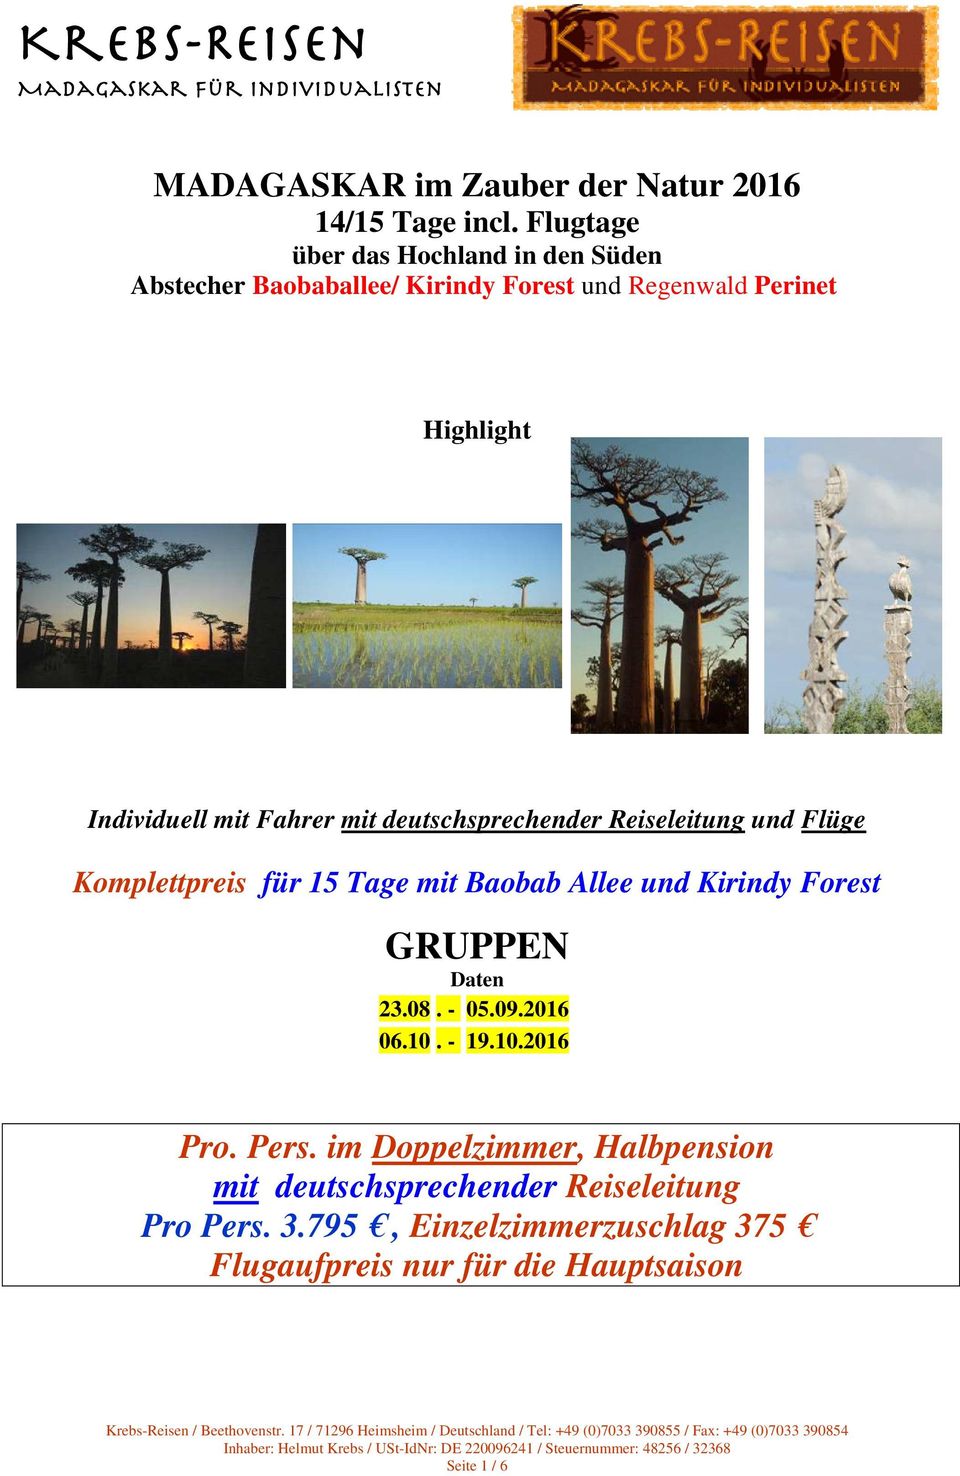 deutschsprechender Reiseleitung und Flüge Komplettpreis für 15 Tage mit Baobab Allee und Kirindy Forest GRUPPEN Daten 23.08. - 05.09.